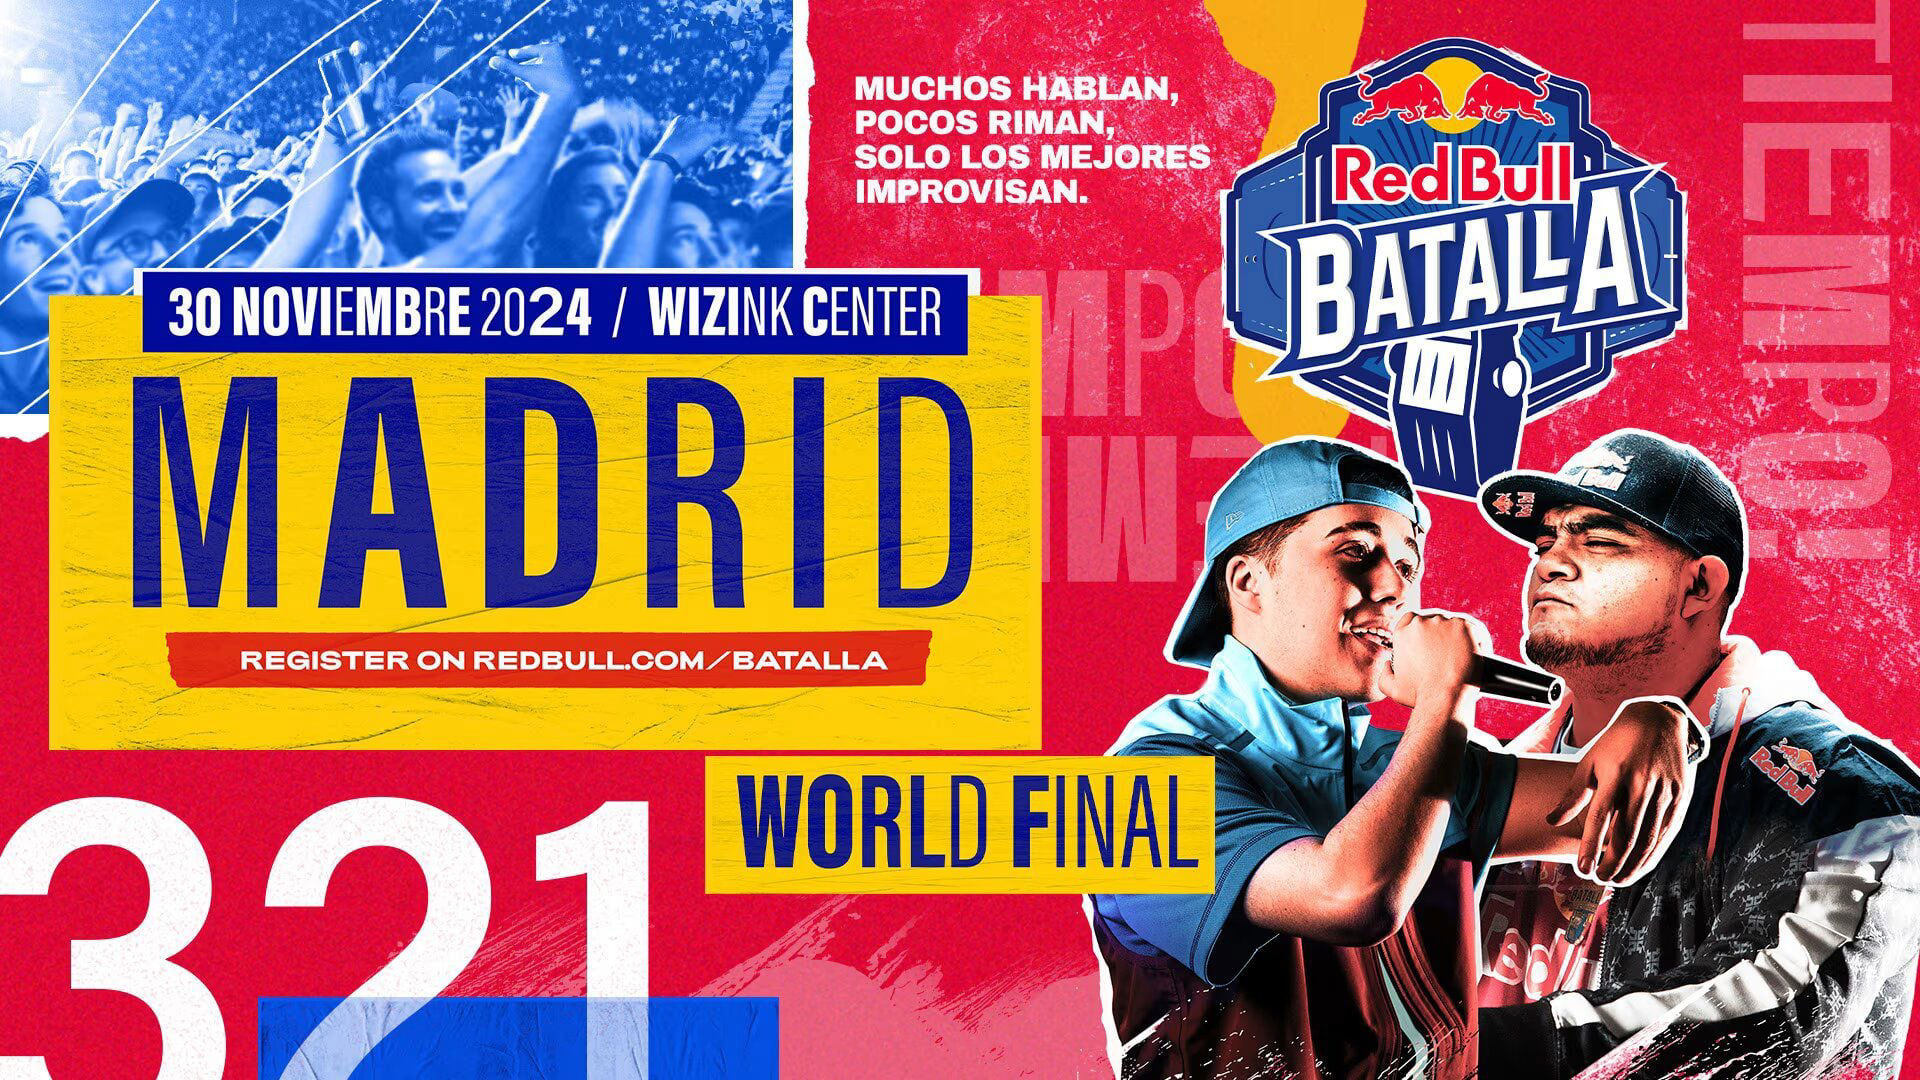 ¿Dónde se celebrará la Final Internacional de Red Bull Batalla 2024?